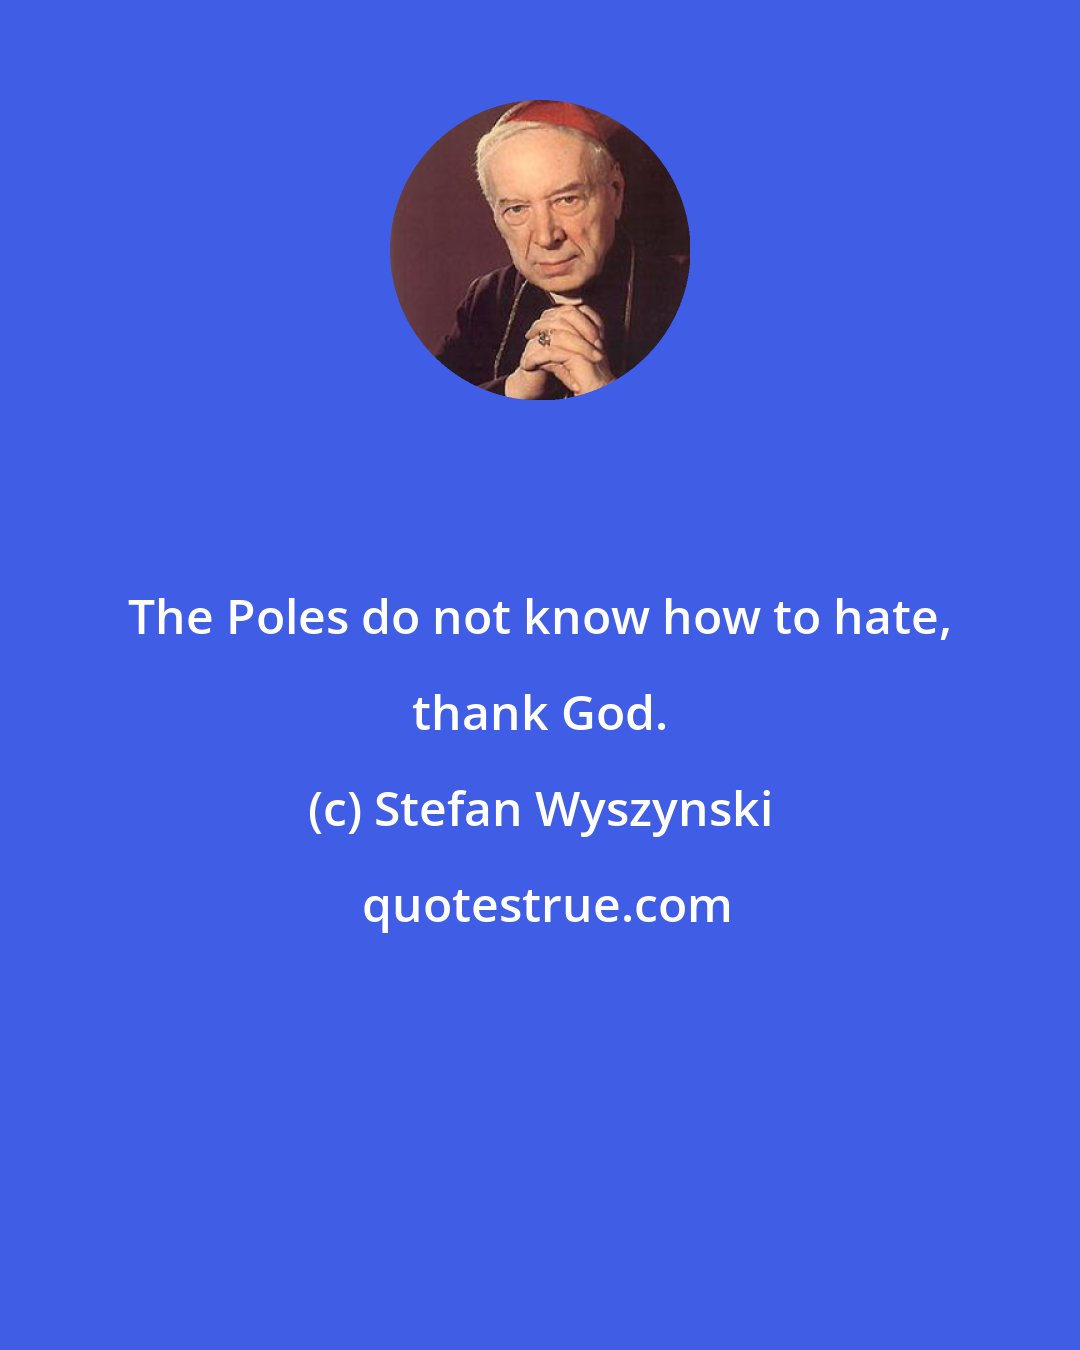 Stefan Wyszynski: The Poles do not know how to hate, thank God.